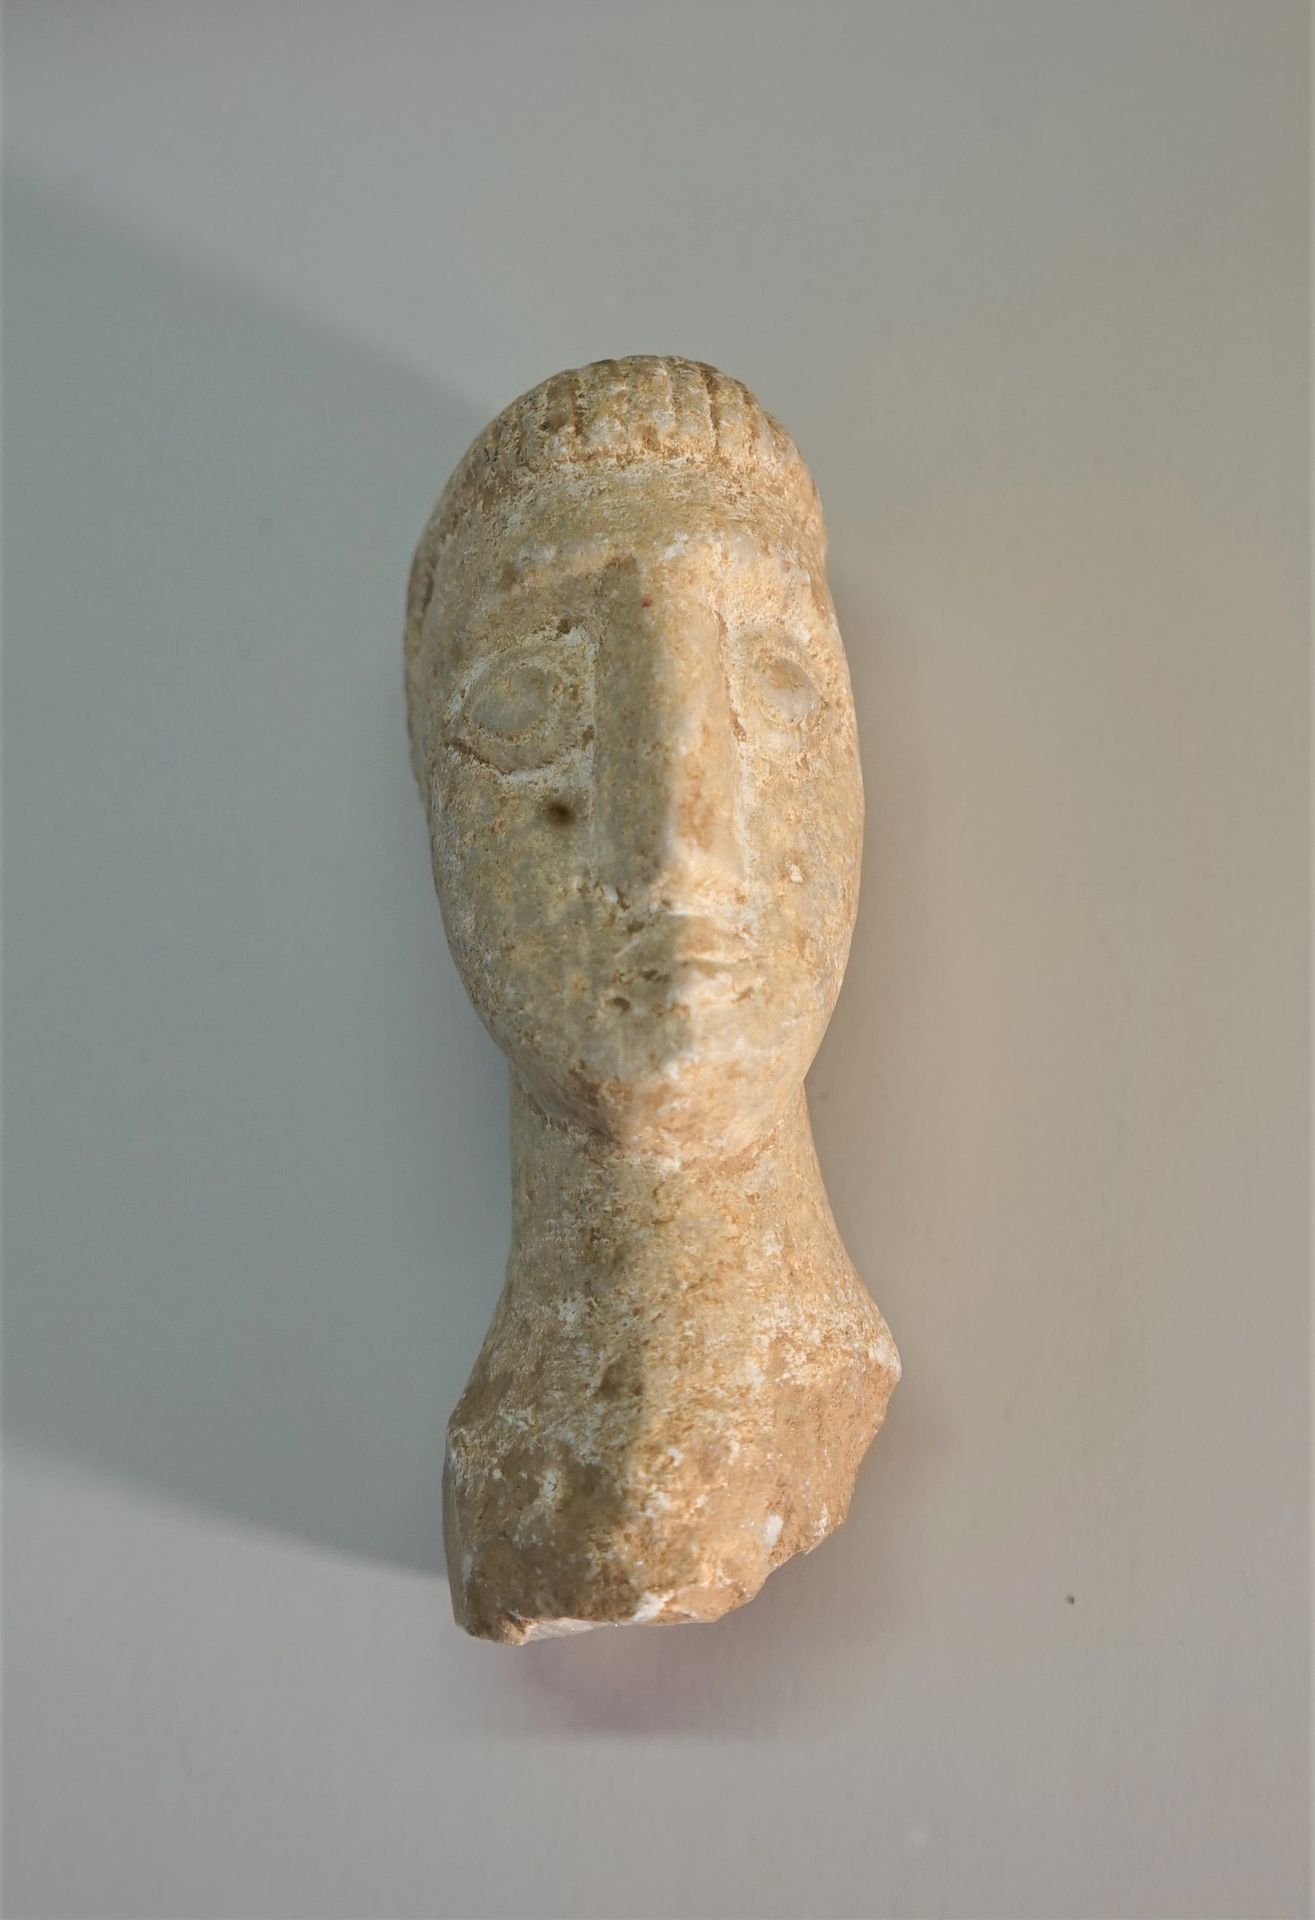 Null Tête en pierre blanche (marbre) de style Celte

11cm